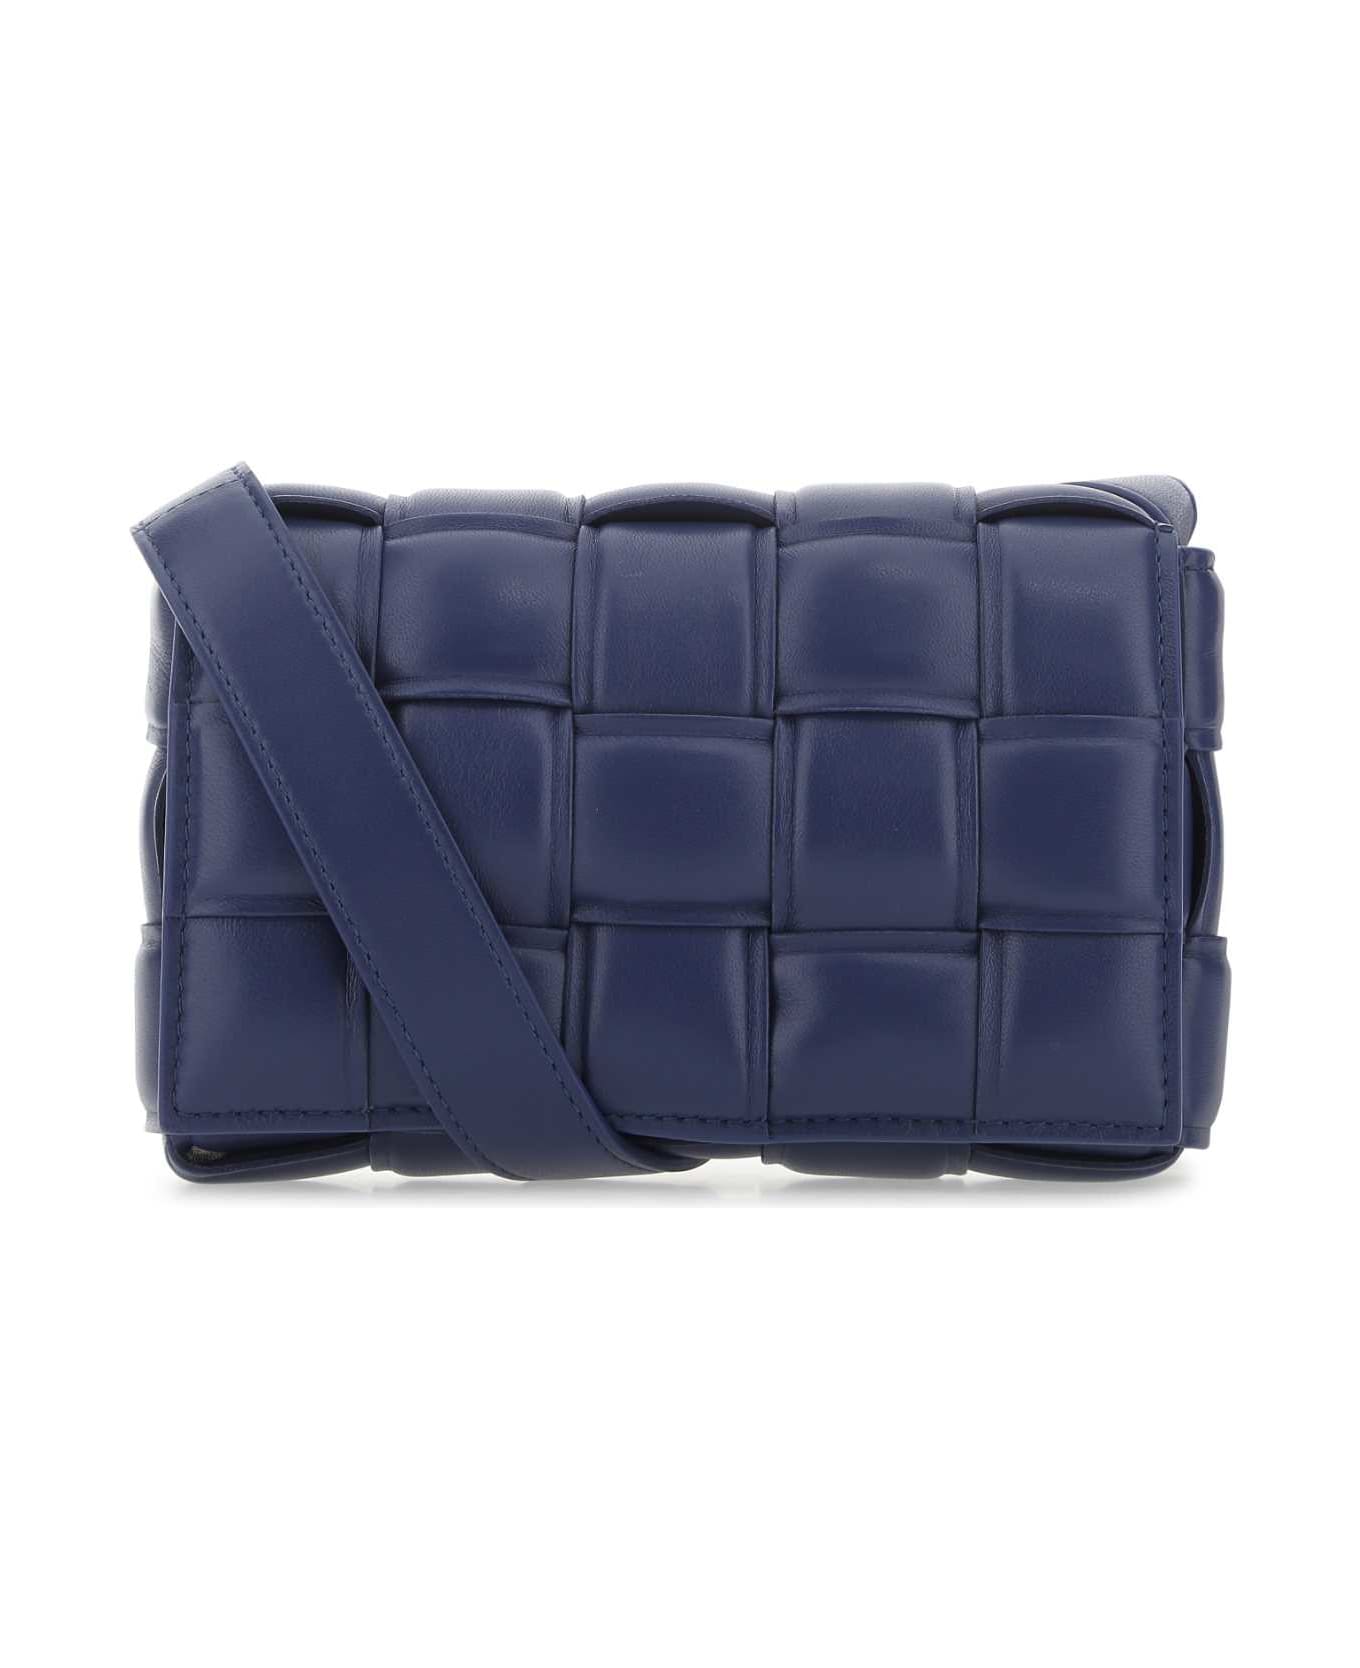 Bottega Veneta Navy Blue Nappa Leather Mini Padded Cassette Crossbody Bag - 4103